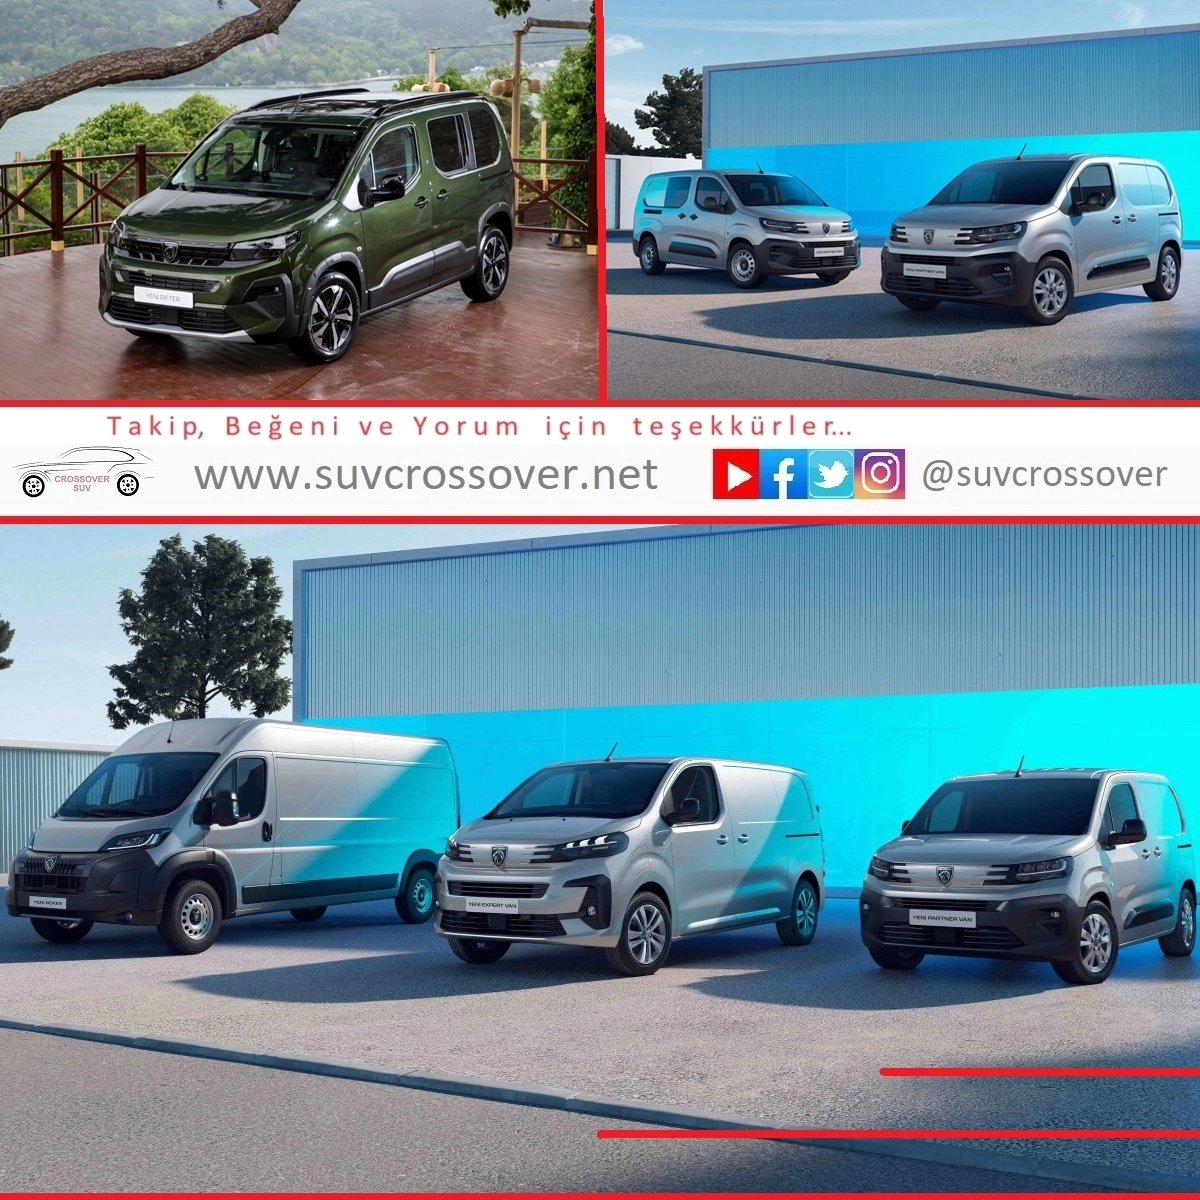 Peugeot ticari ailesi yeni özellikleriyle yollara çıkıyor.

￼suvcrossover.net
#SUVcrossover, #cars, #carinstagram, #instacar, #carsofinstagram, #osmanyavuz, #osmandannameler, #caroffamily, #carpics, #carpictures, #dreamcar, #electricvehicle, #electriccars,